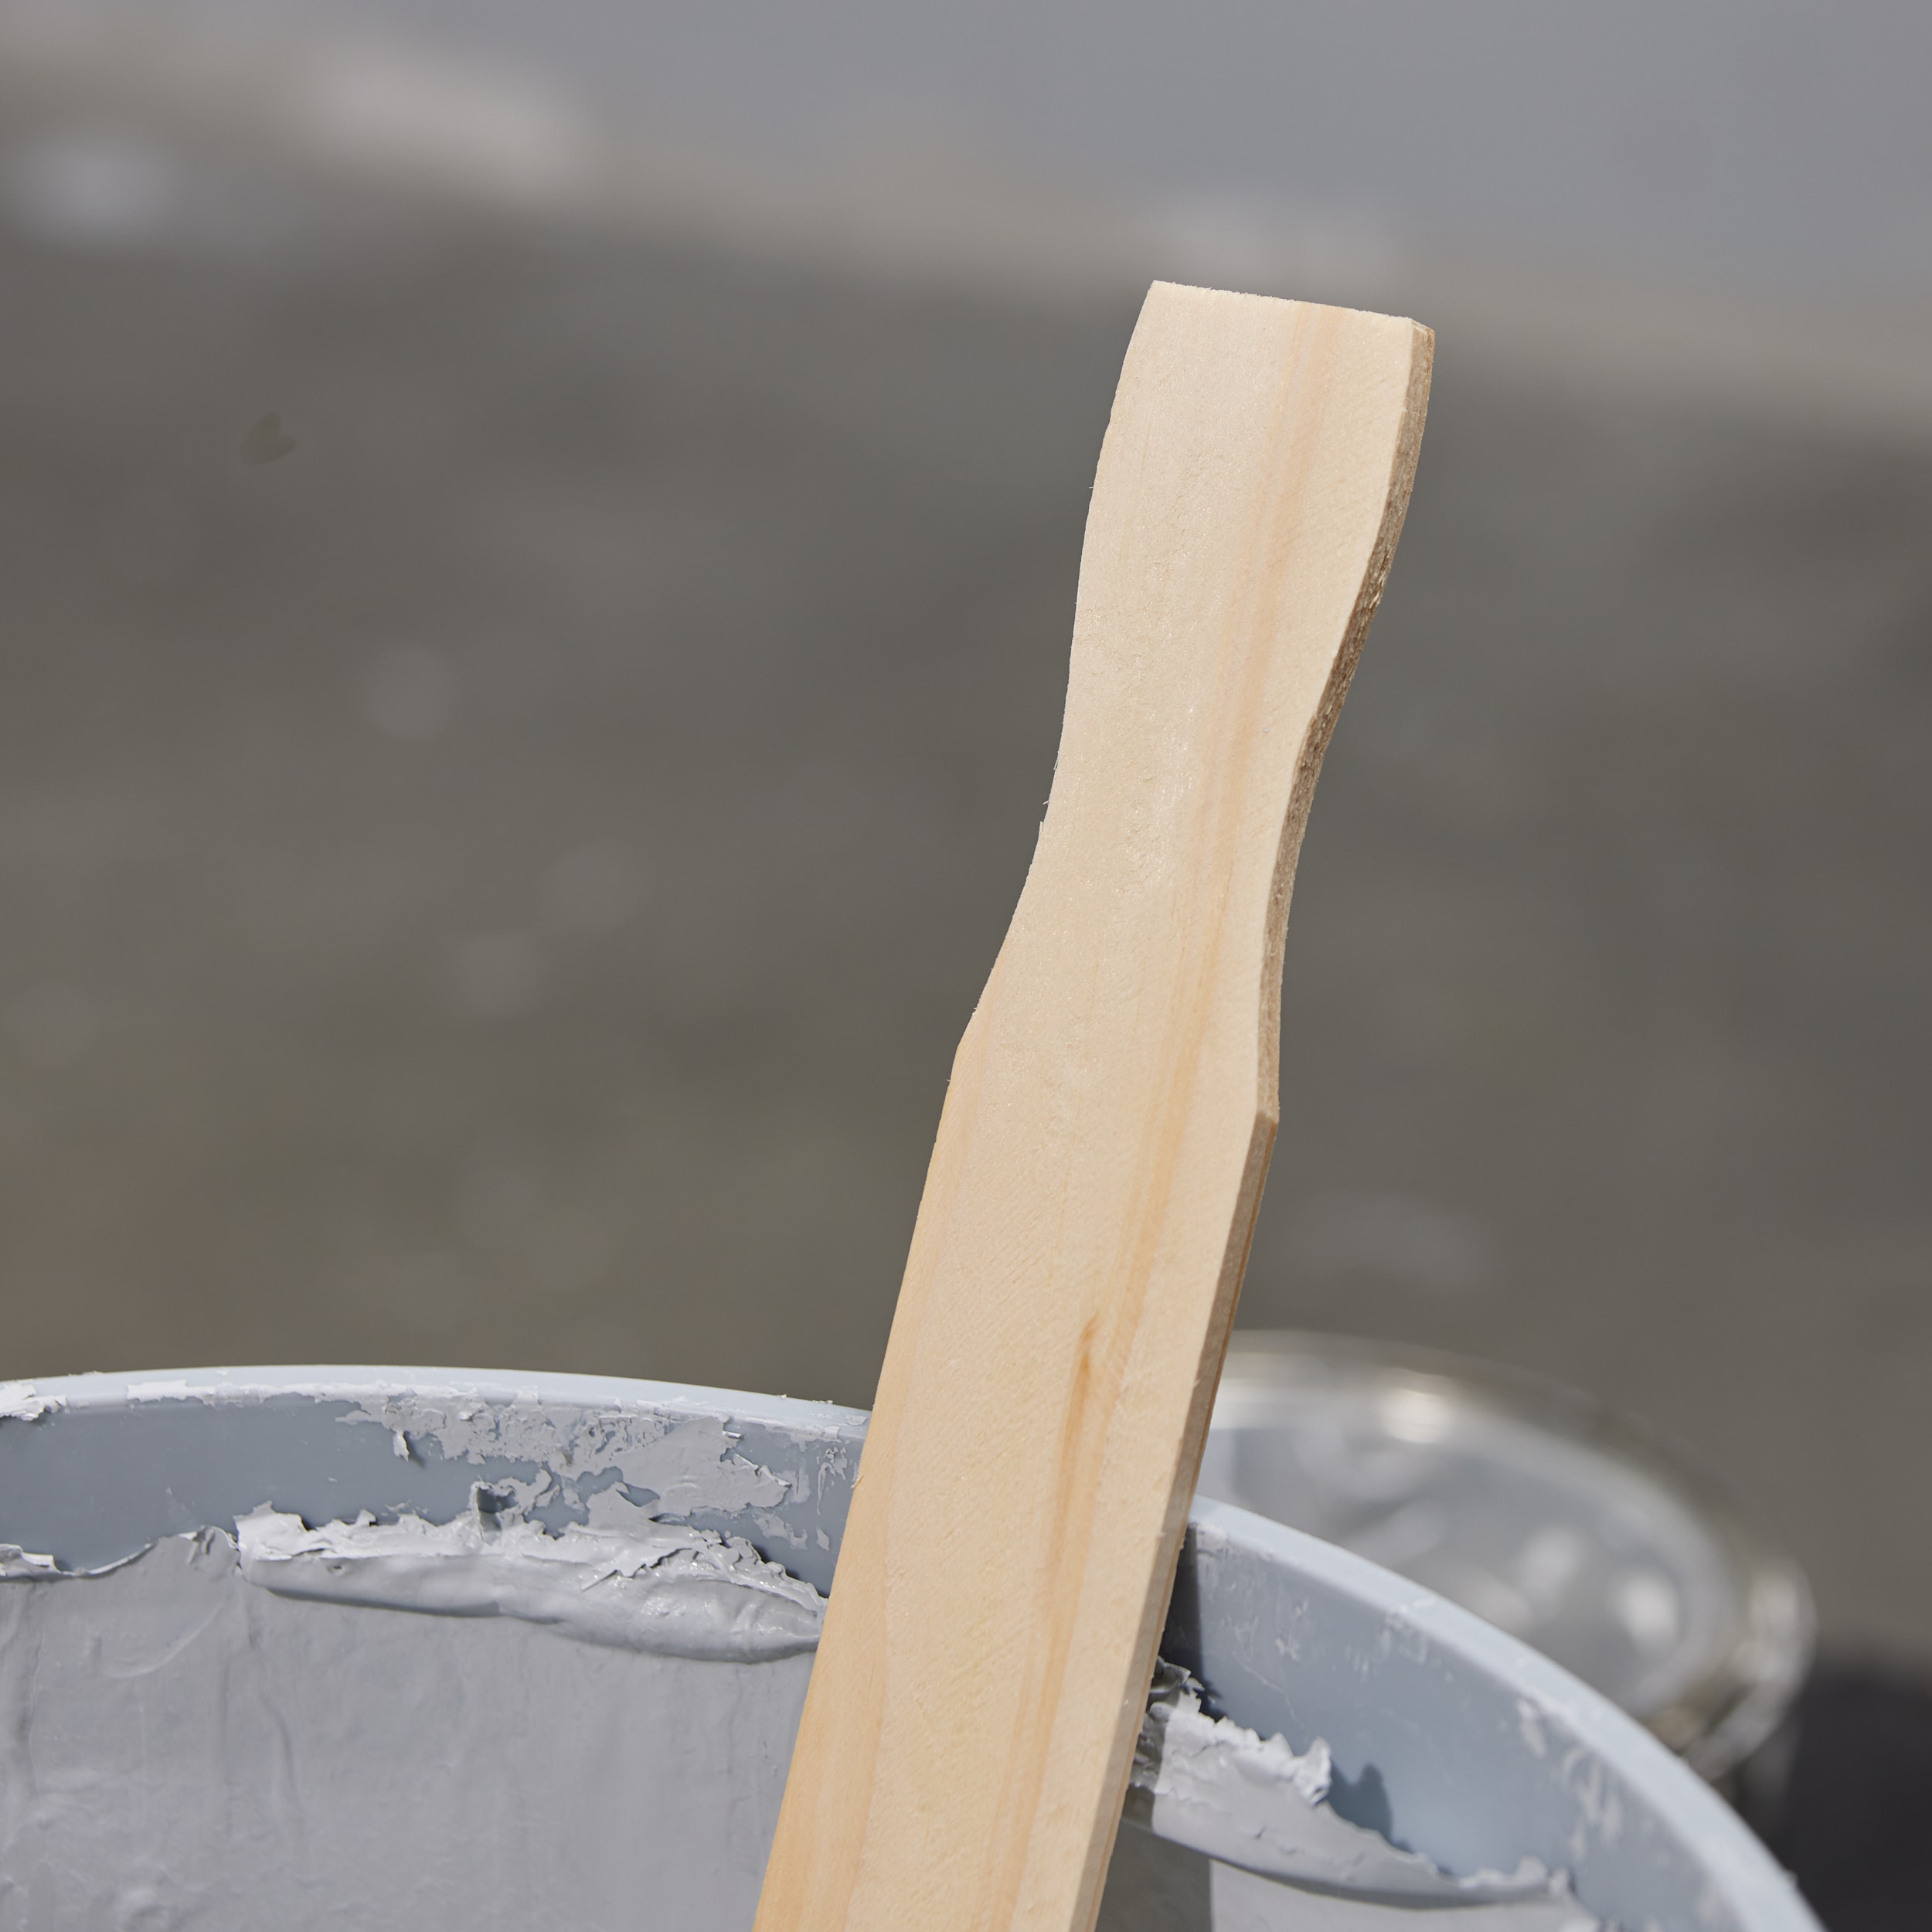 5 Gallon Paint Stir Sticks Bulk 17 inch 10pc Wooden Paint Stirrers